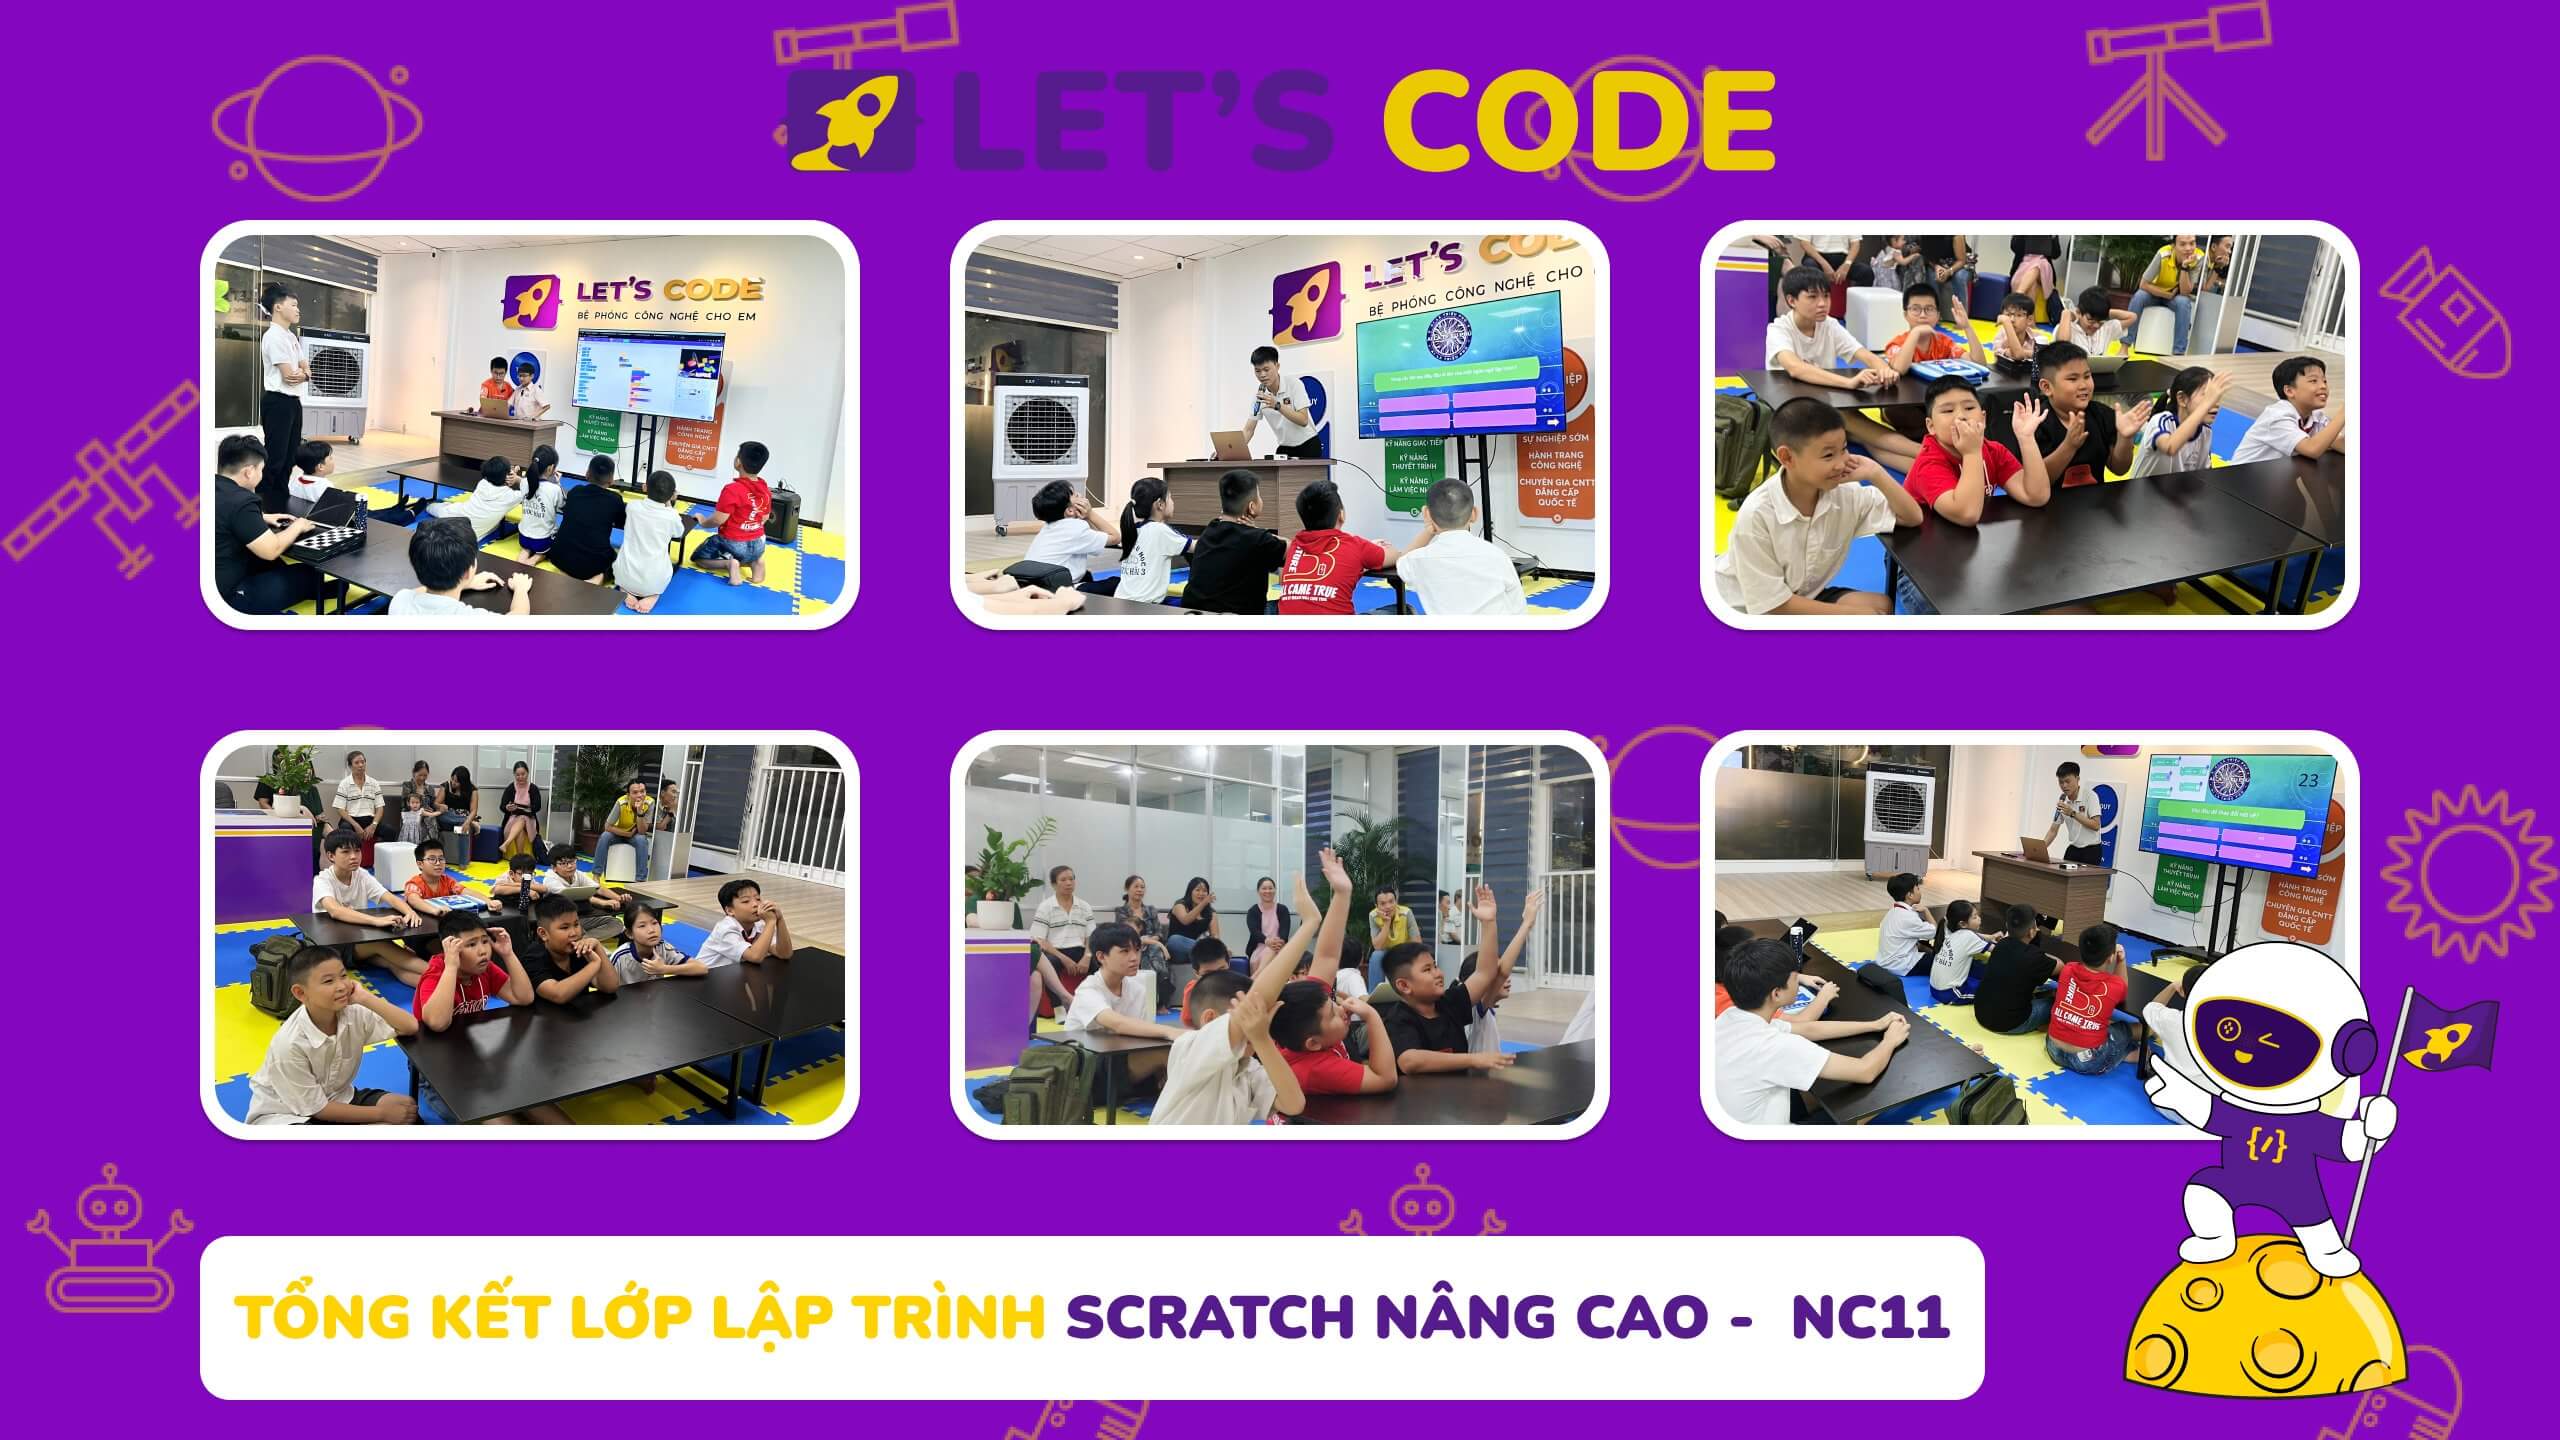 Tổng kết lớp lập trình Scratch nâng cao tại trung tâm Let's Code